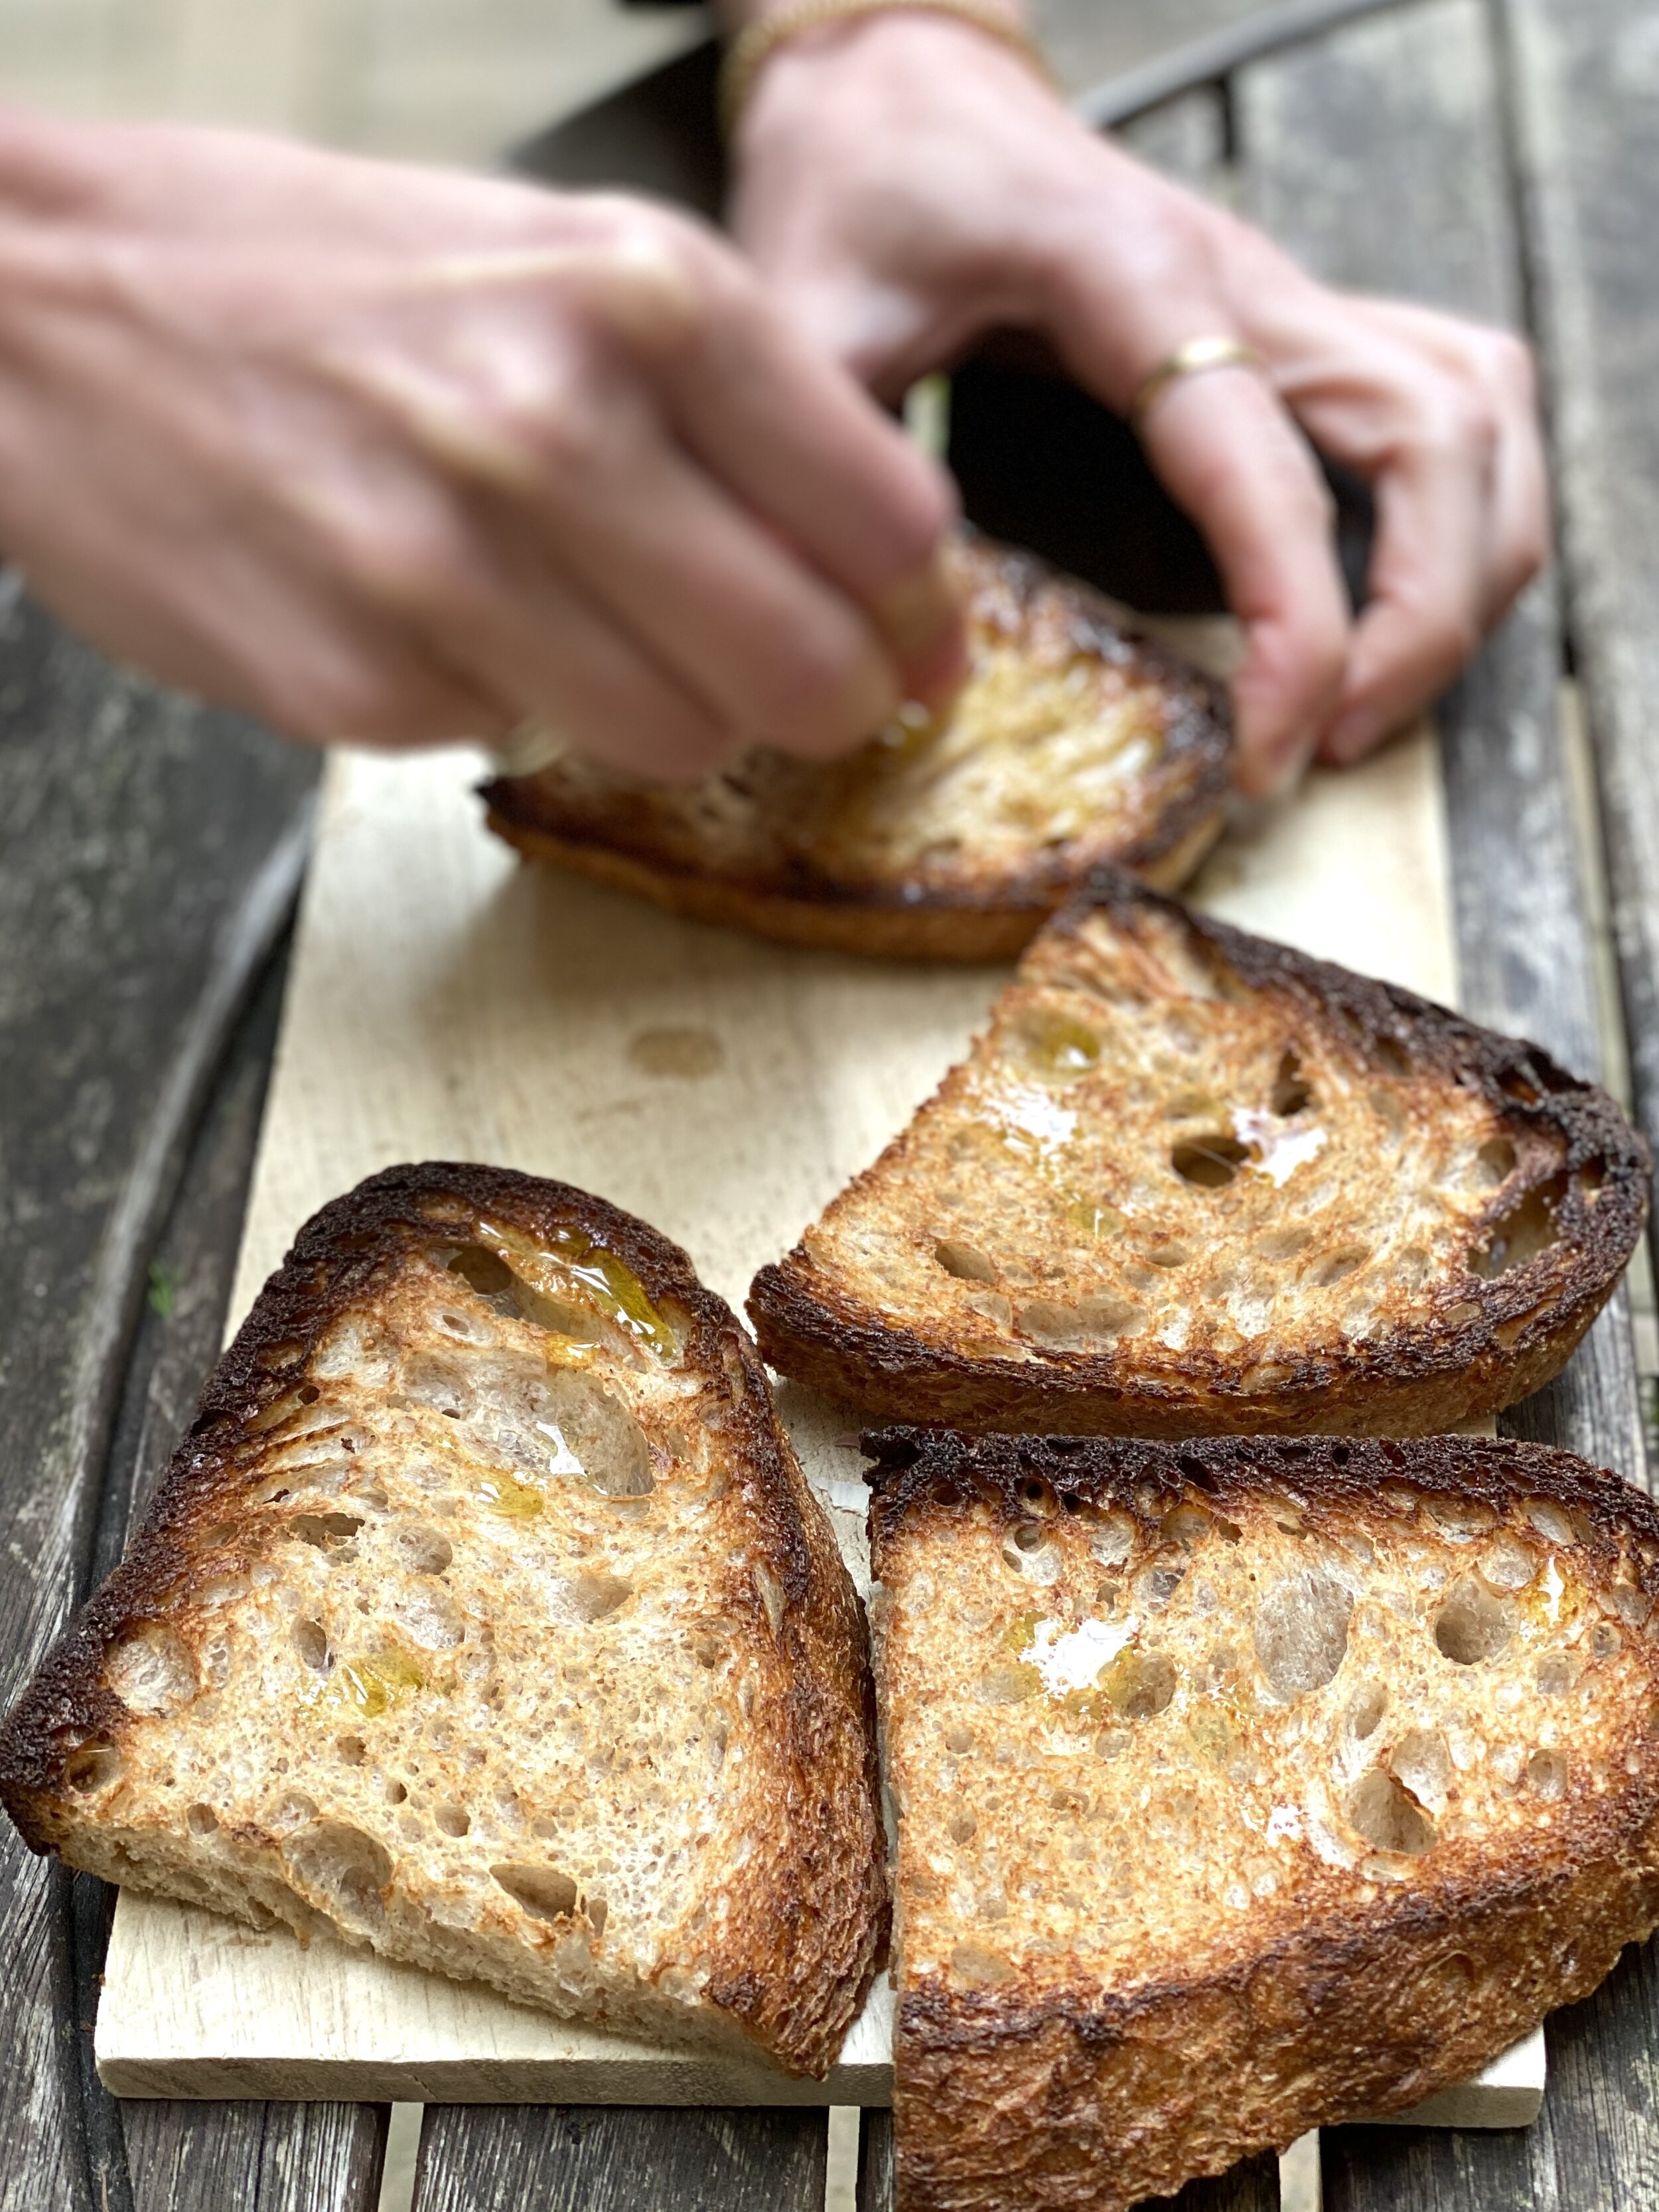 Rubbing garlic on sourdough toast